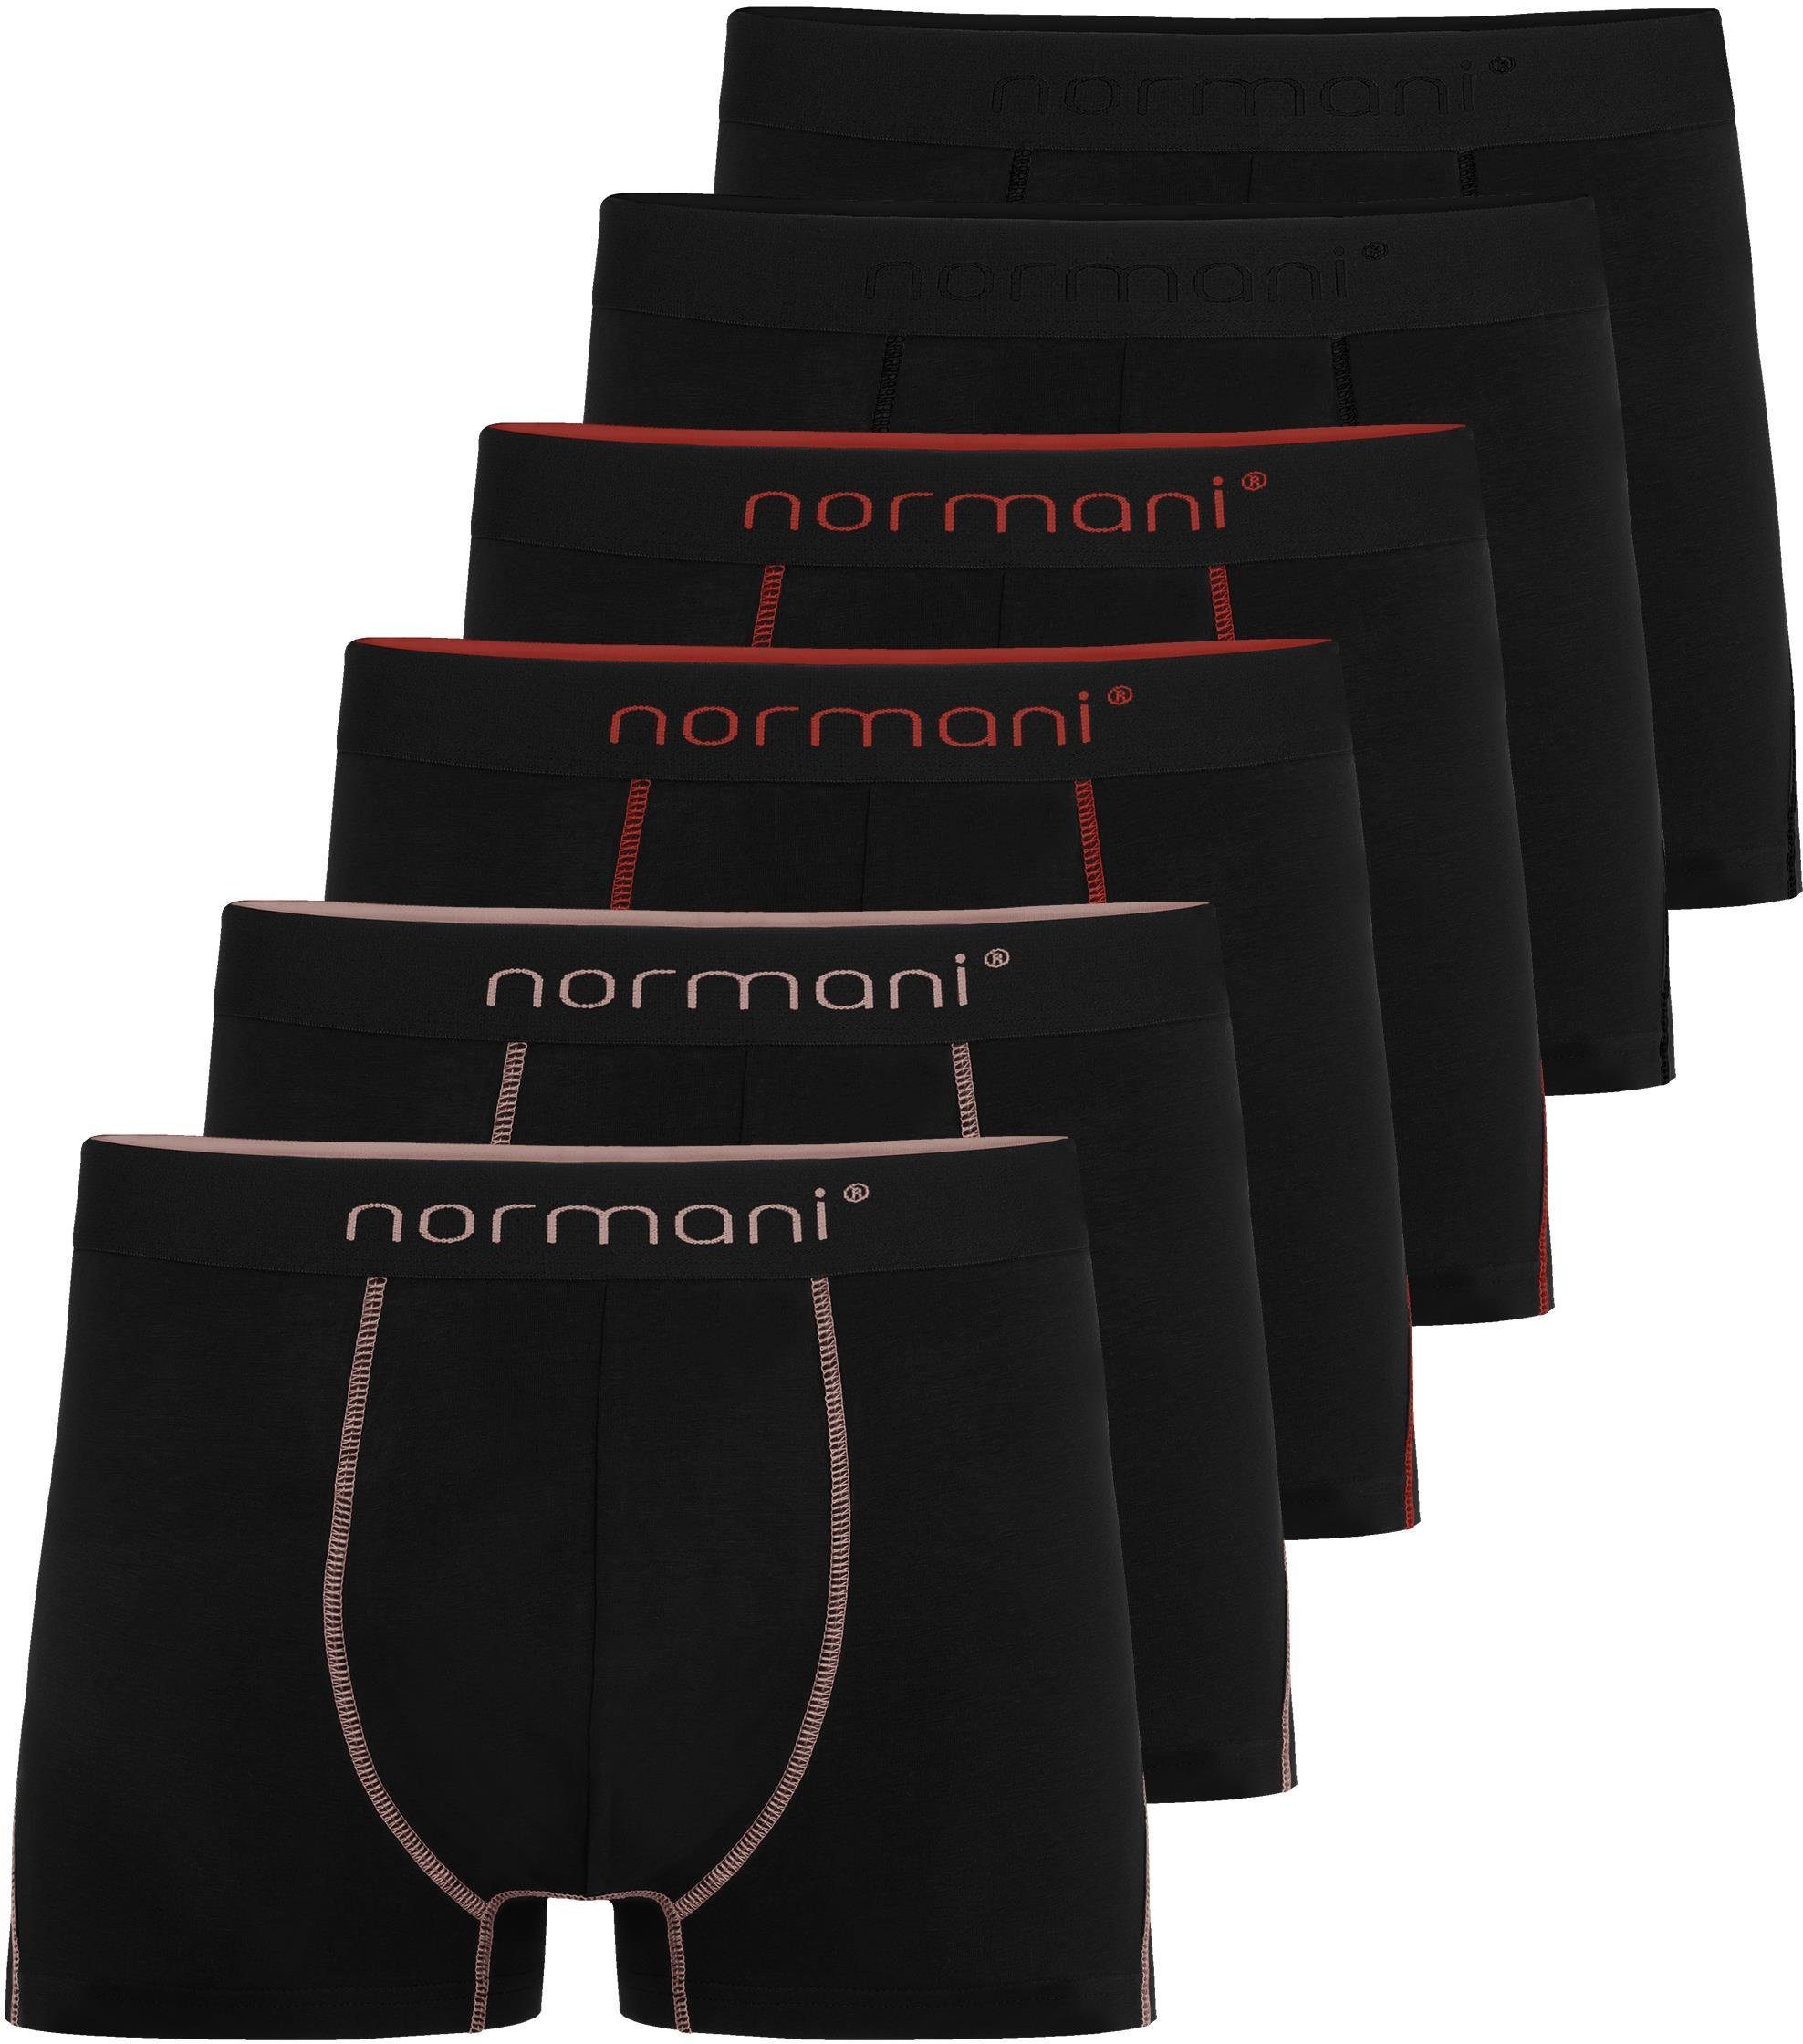 preisgesenkt normani Boxershorts 6x Herren Baumwoll-Boxershorts Schwarz/Rot/Lachs aus atmungsaktiver Männer Unterhose für Baumwolle